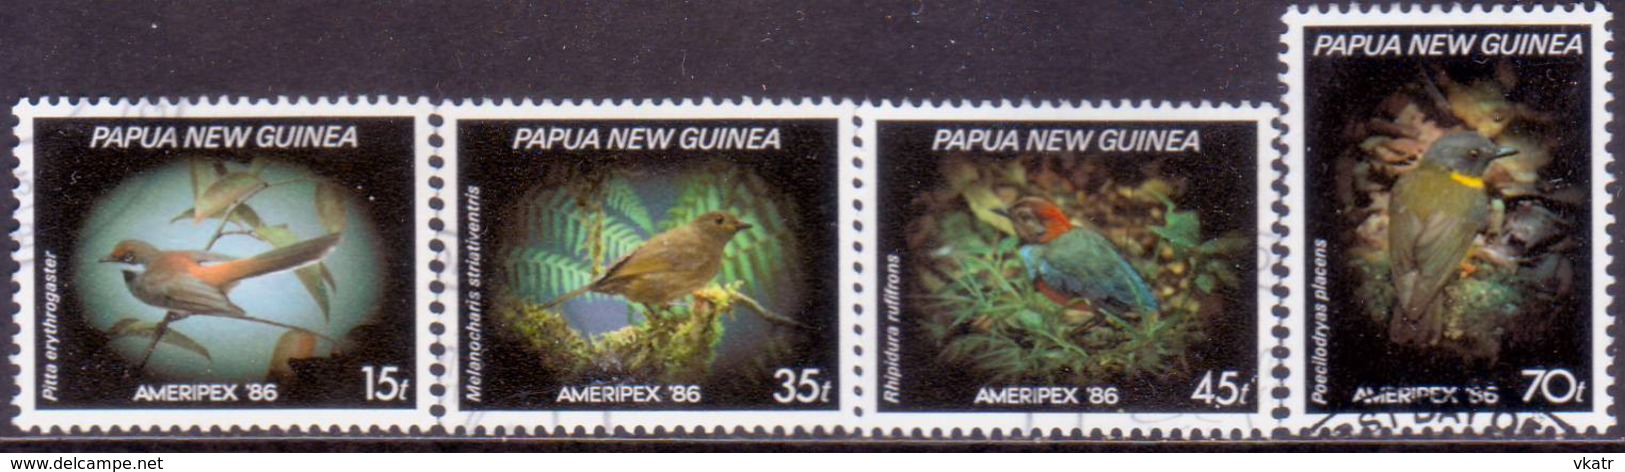 PAPUA NEW GUINEA 1986 SG #525-28 Compl.set Used Ameripex '86 - Papúa Nueva Guinea